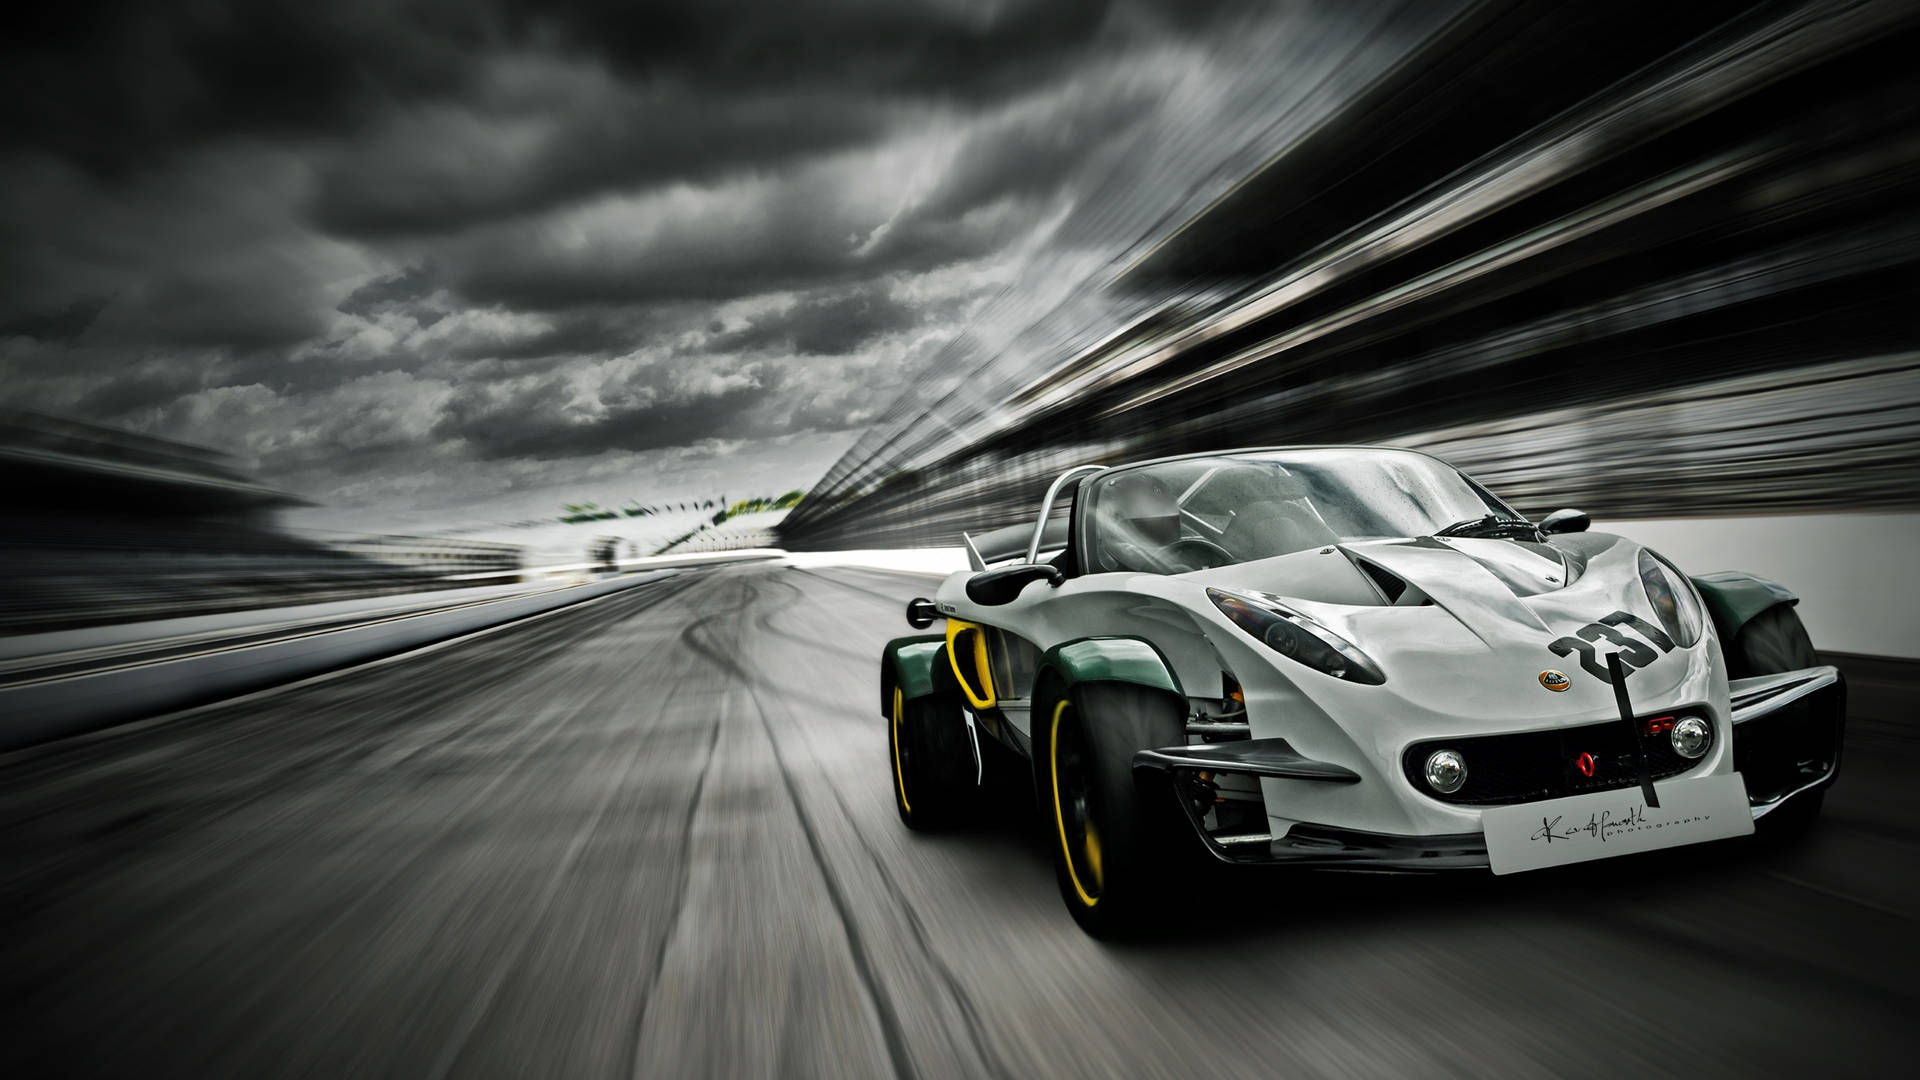 Auto Racing White Lotus